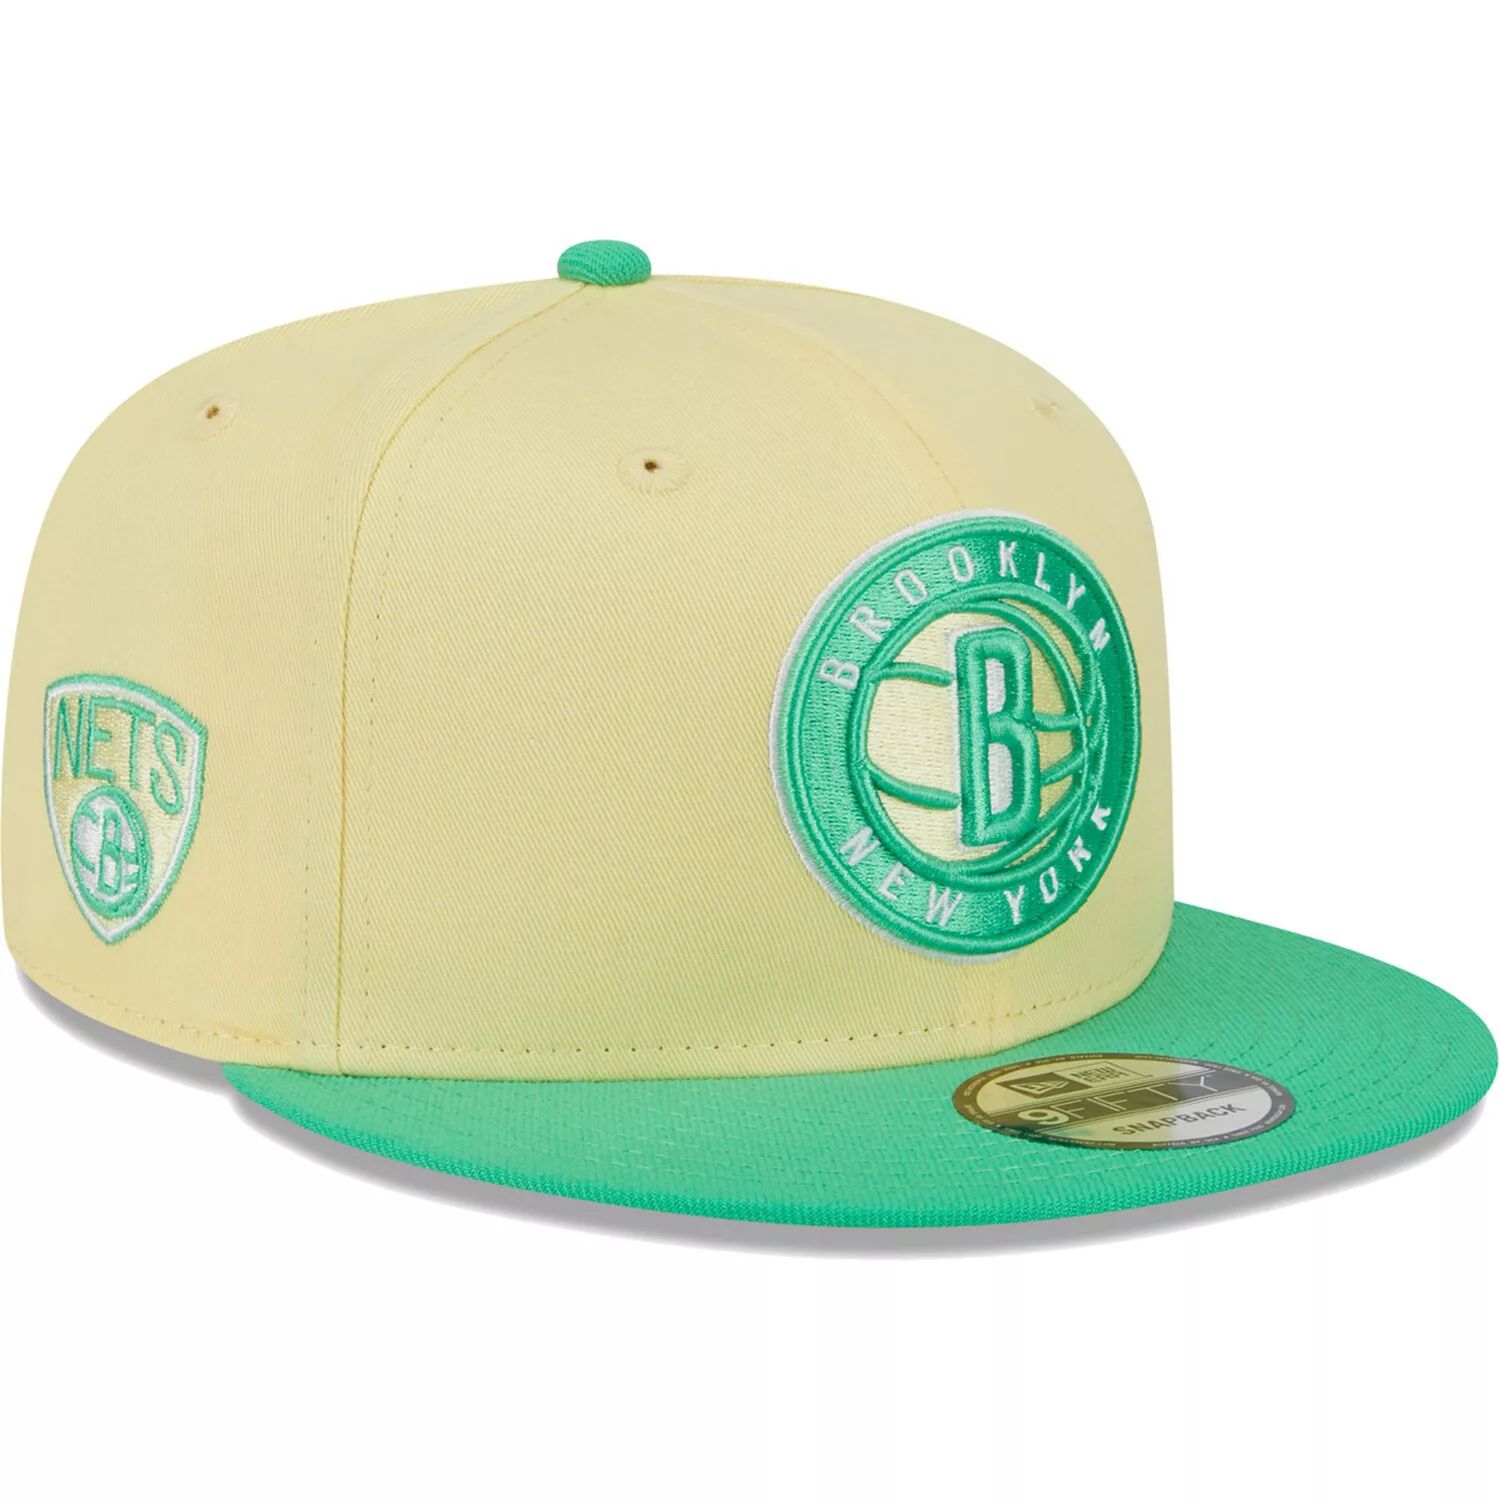 Мужская кепка New Era желто-зеленая Brooklyn Nets 9FIFTY